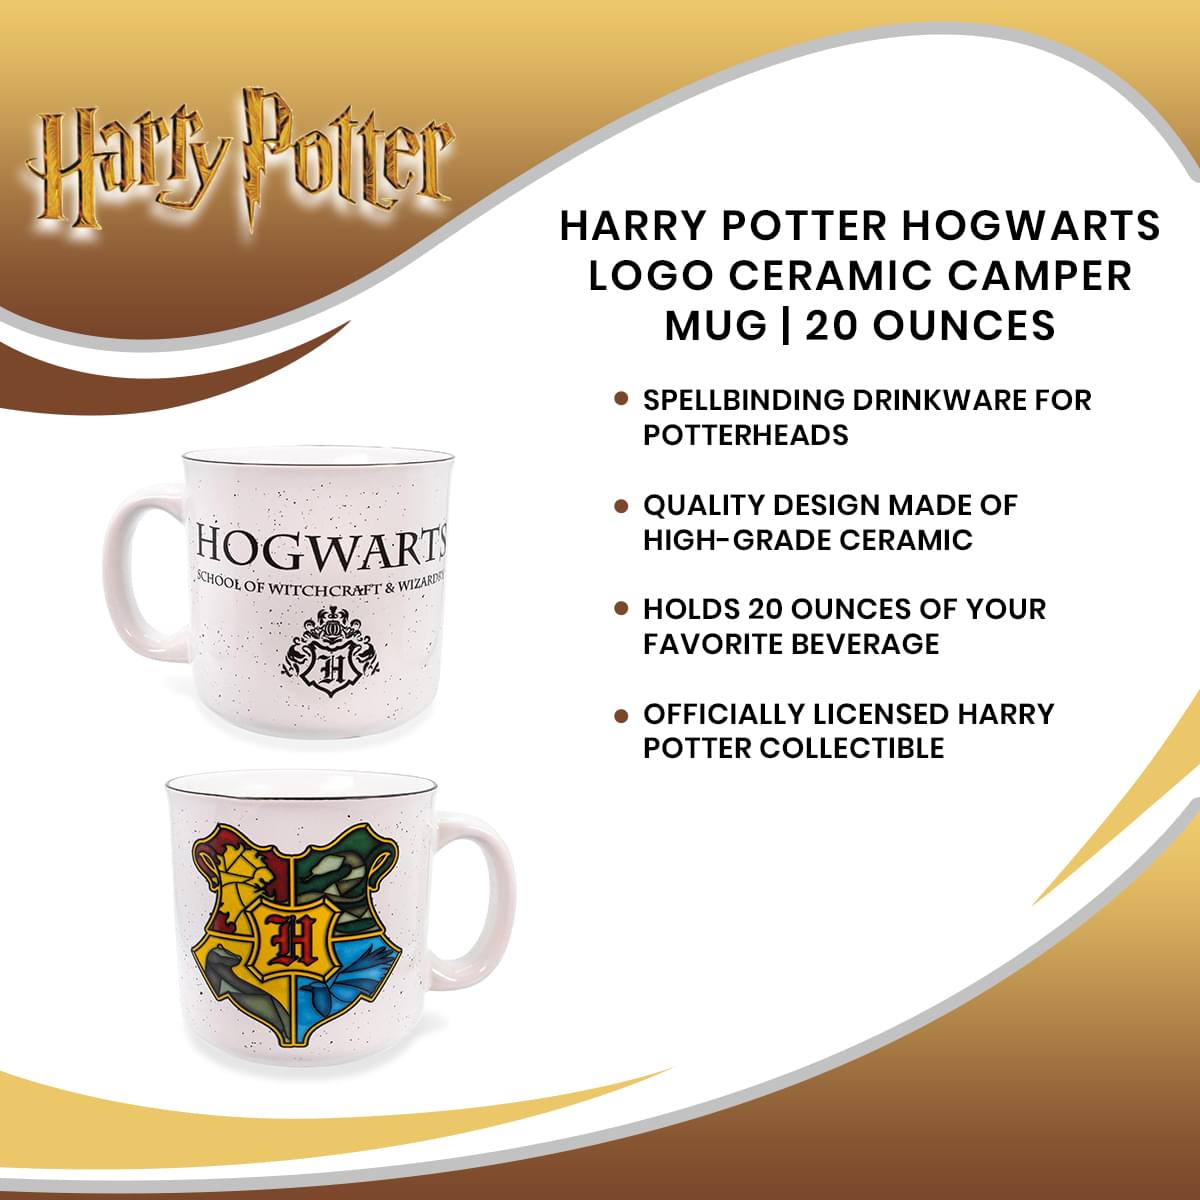 Harry Potter Hogwarts Logo Ceramic Camper Mug | 20 Ounces